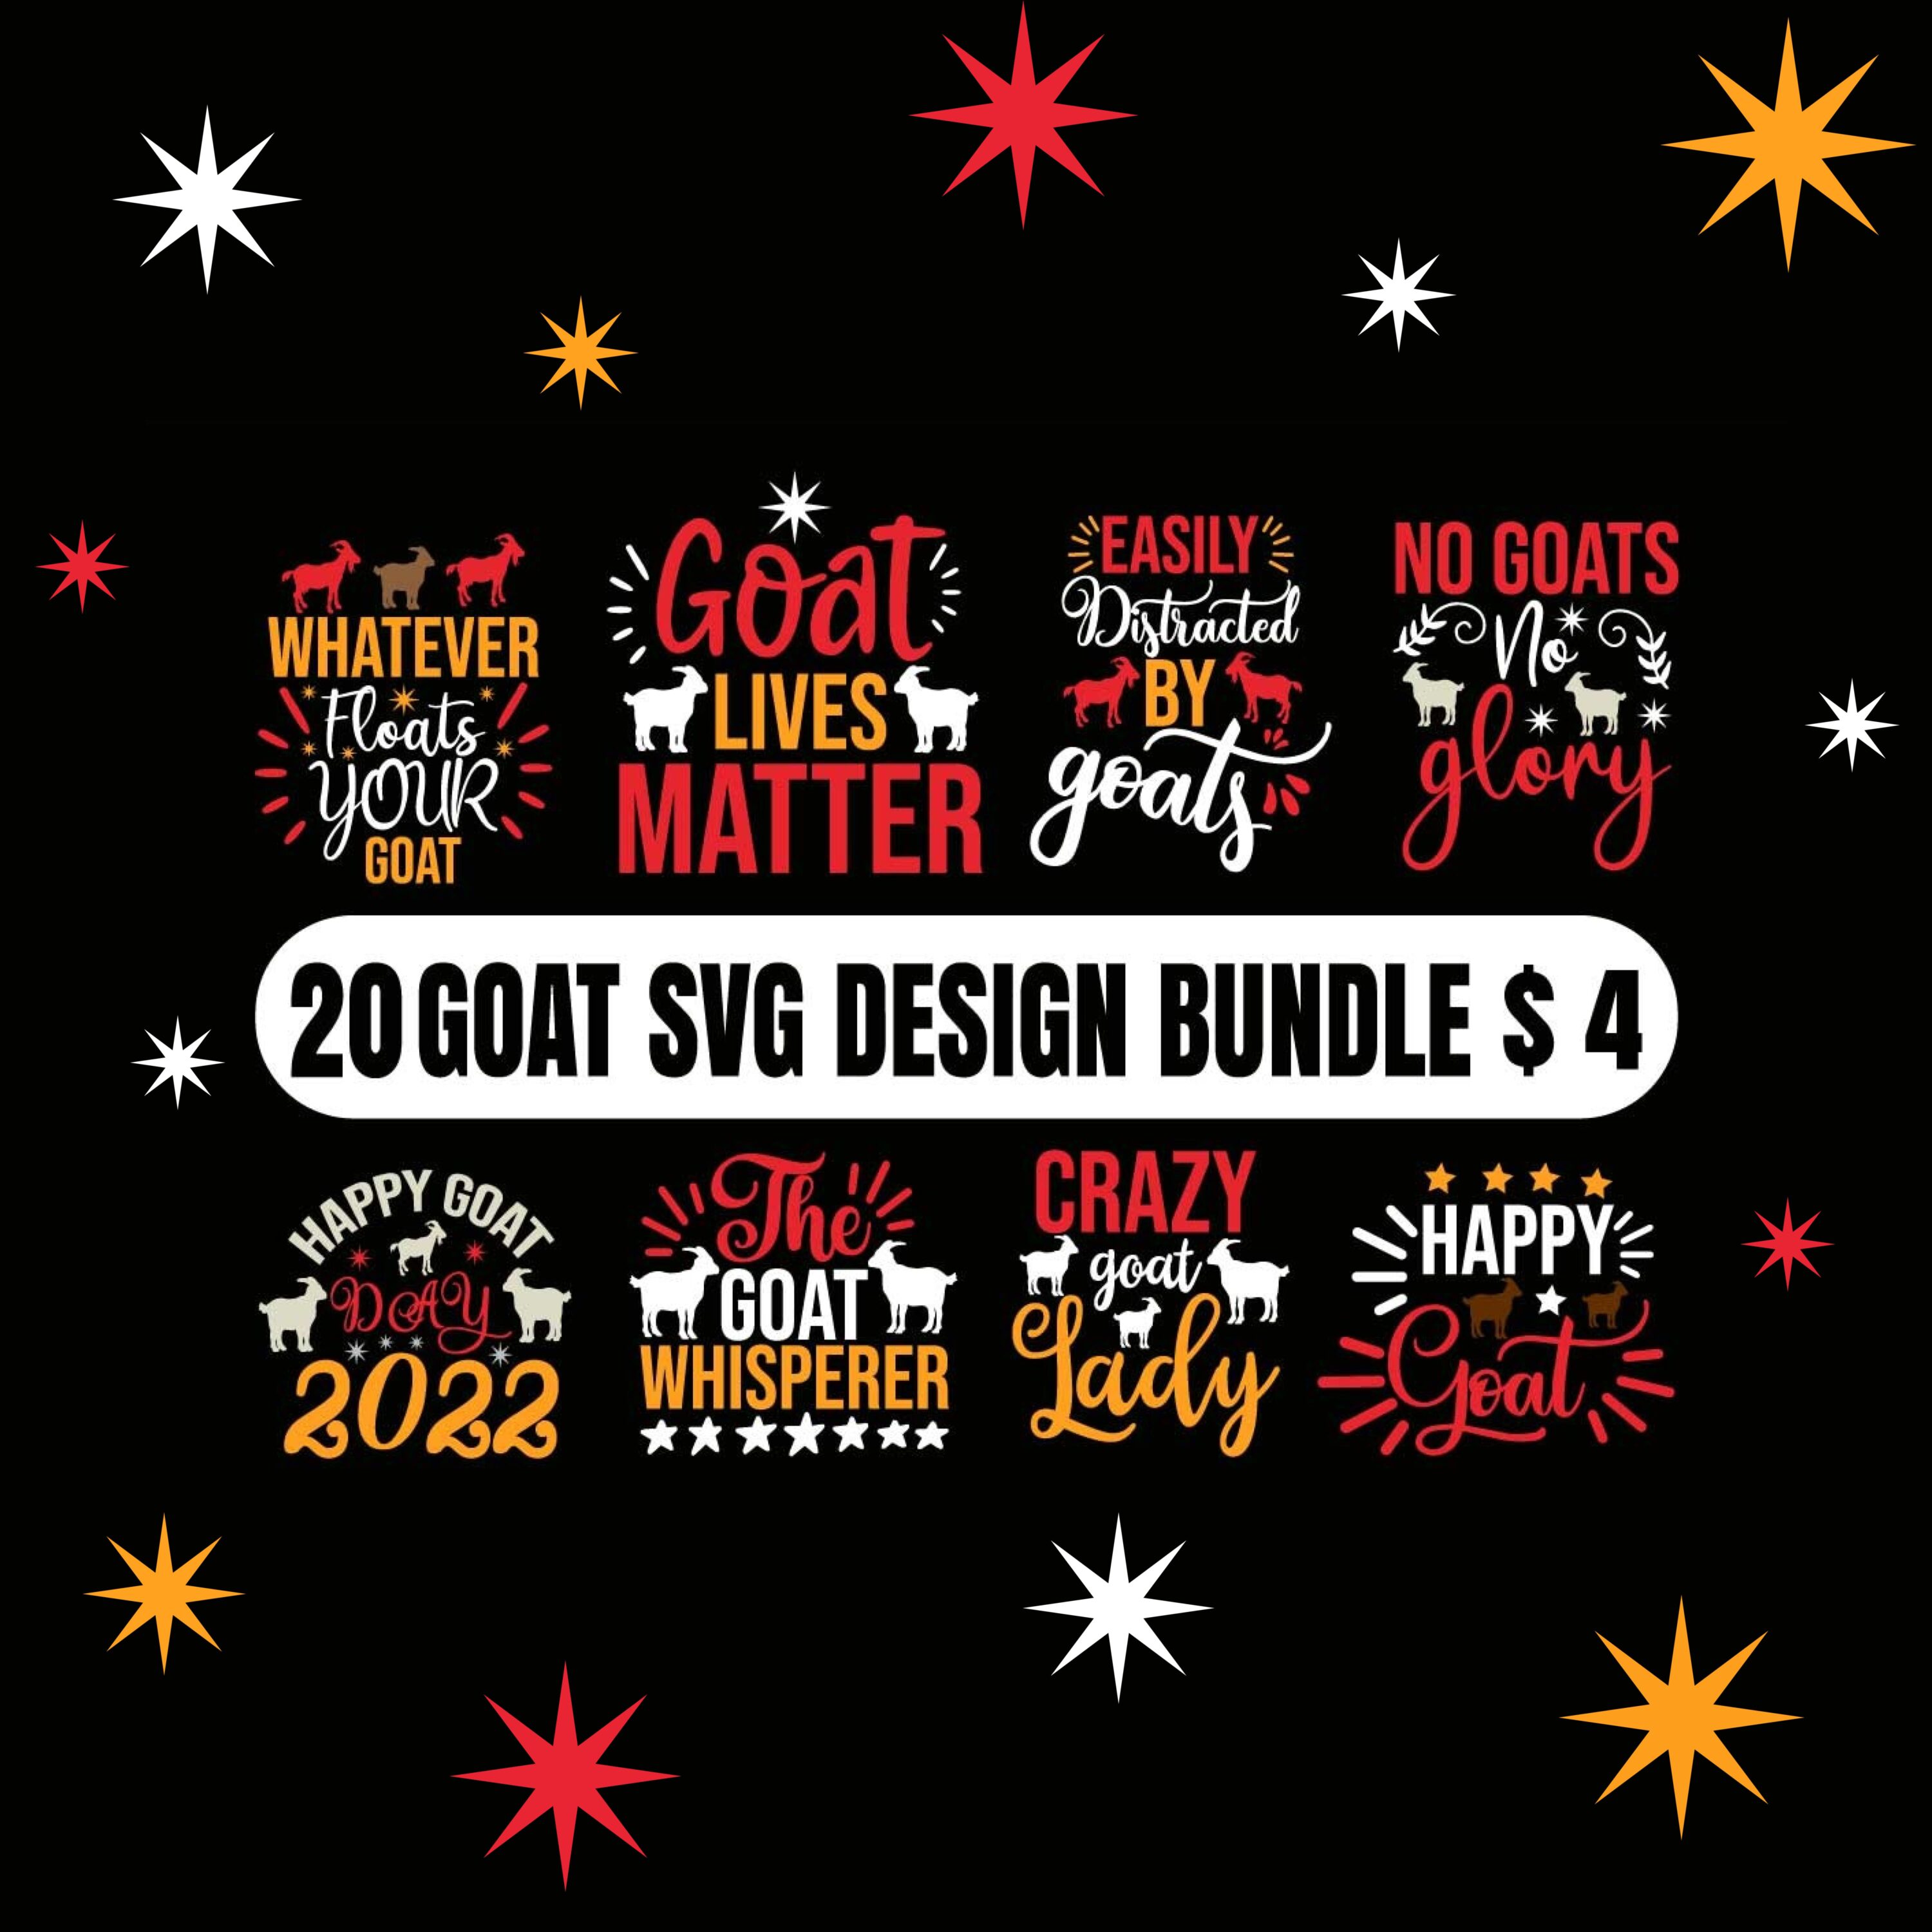 20 goat svg design bundle bundle.